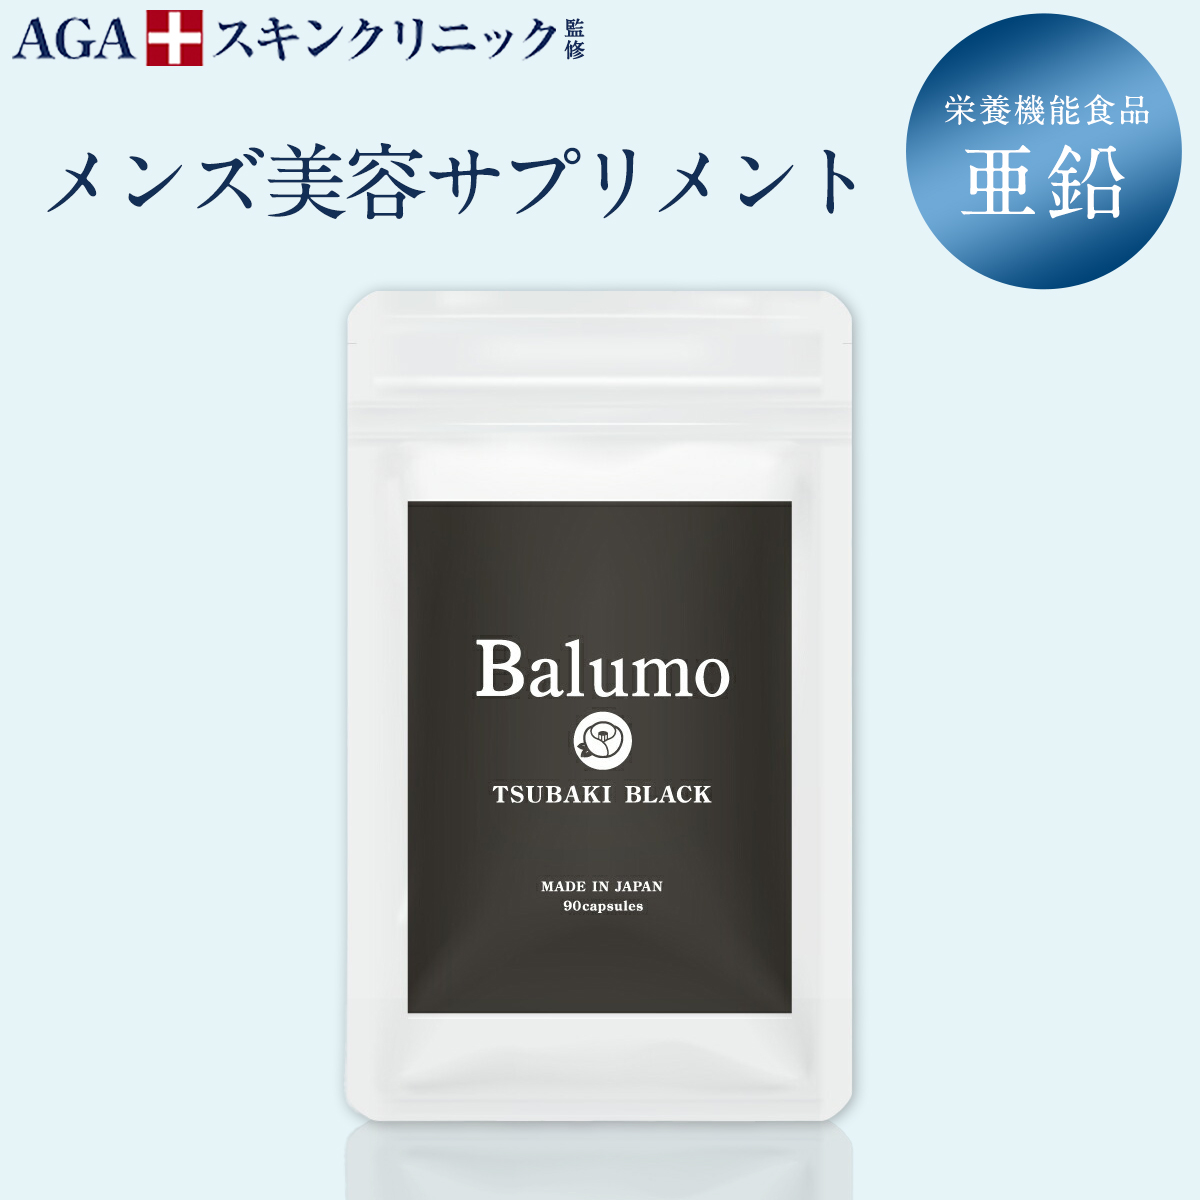 Balumo TSUBAKI BALCK（ バルモ ツバキブラック） 1袋90錠 栄養機能食品 亜鉛 メンズ 美容 サプリ パントガール ブラックジンジャー 鉄 ケラチン ビタミン サプリメント AGAスキンクリニック画像